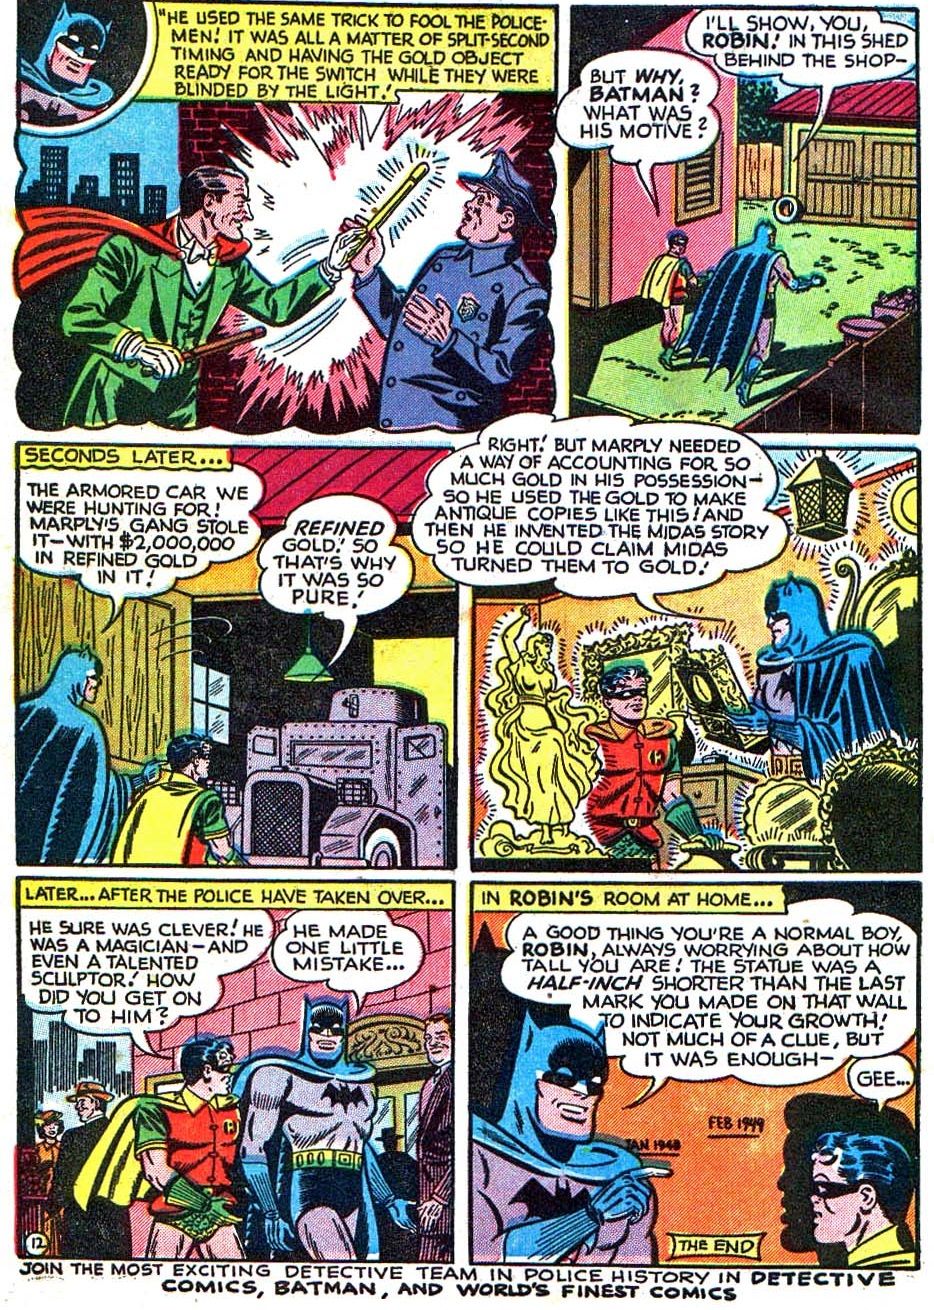 Batman zorientował się, że Robin tak naprawdę nie jest posągiem